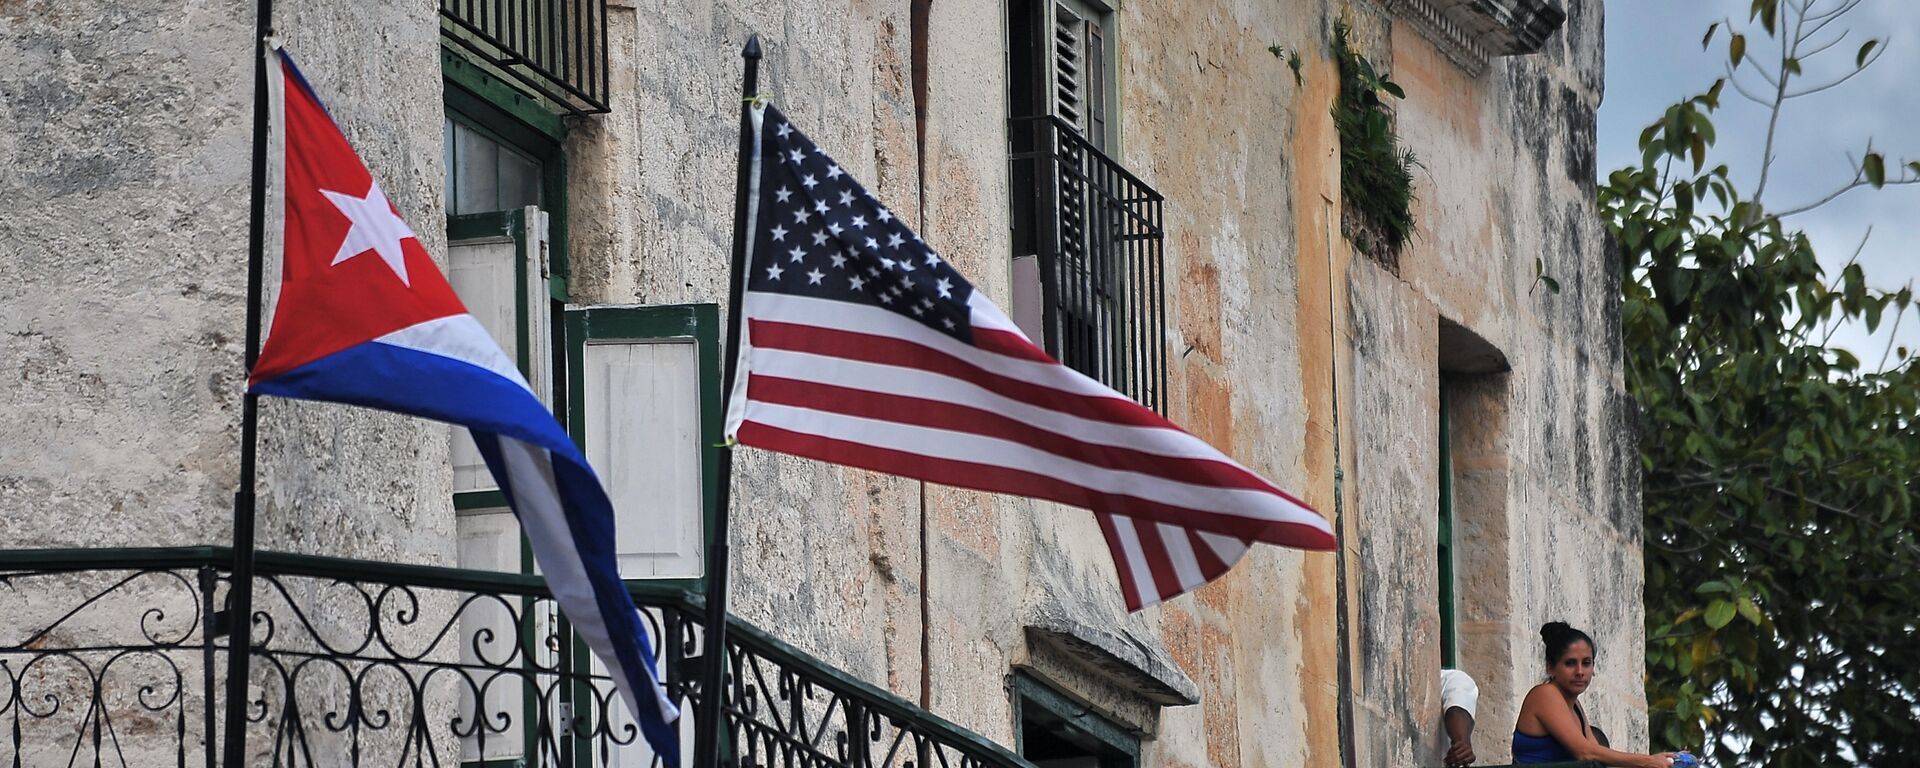 До пре неки дан незамисливо: заставе Кубе и САД  вијоре се у Хавани - Sputnik Србија, 1920, 02.11.2019